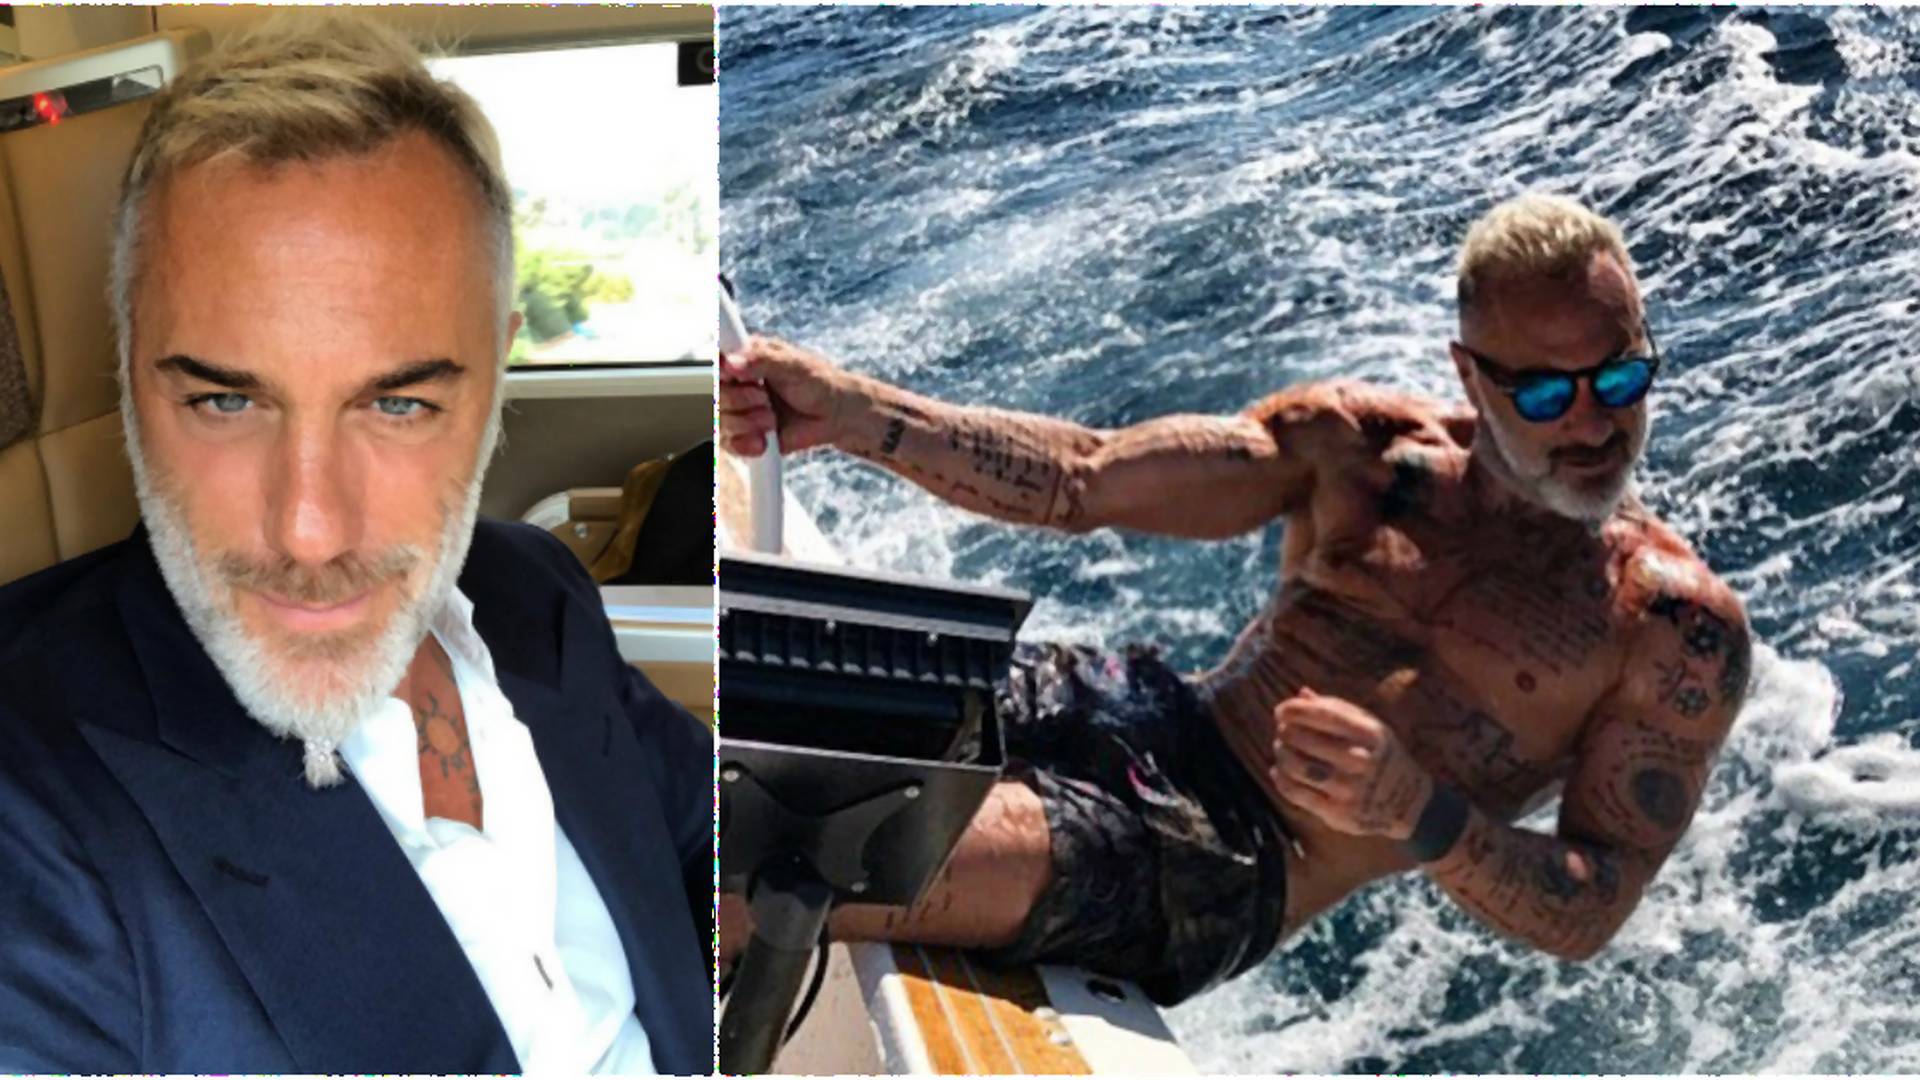 Známy instagramový milionár Gianluca Vacchi prišiel kvôli dlhom o svoje majetky